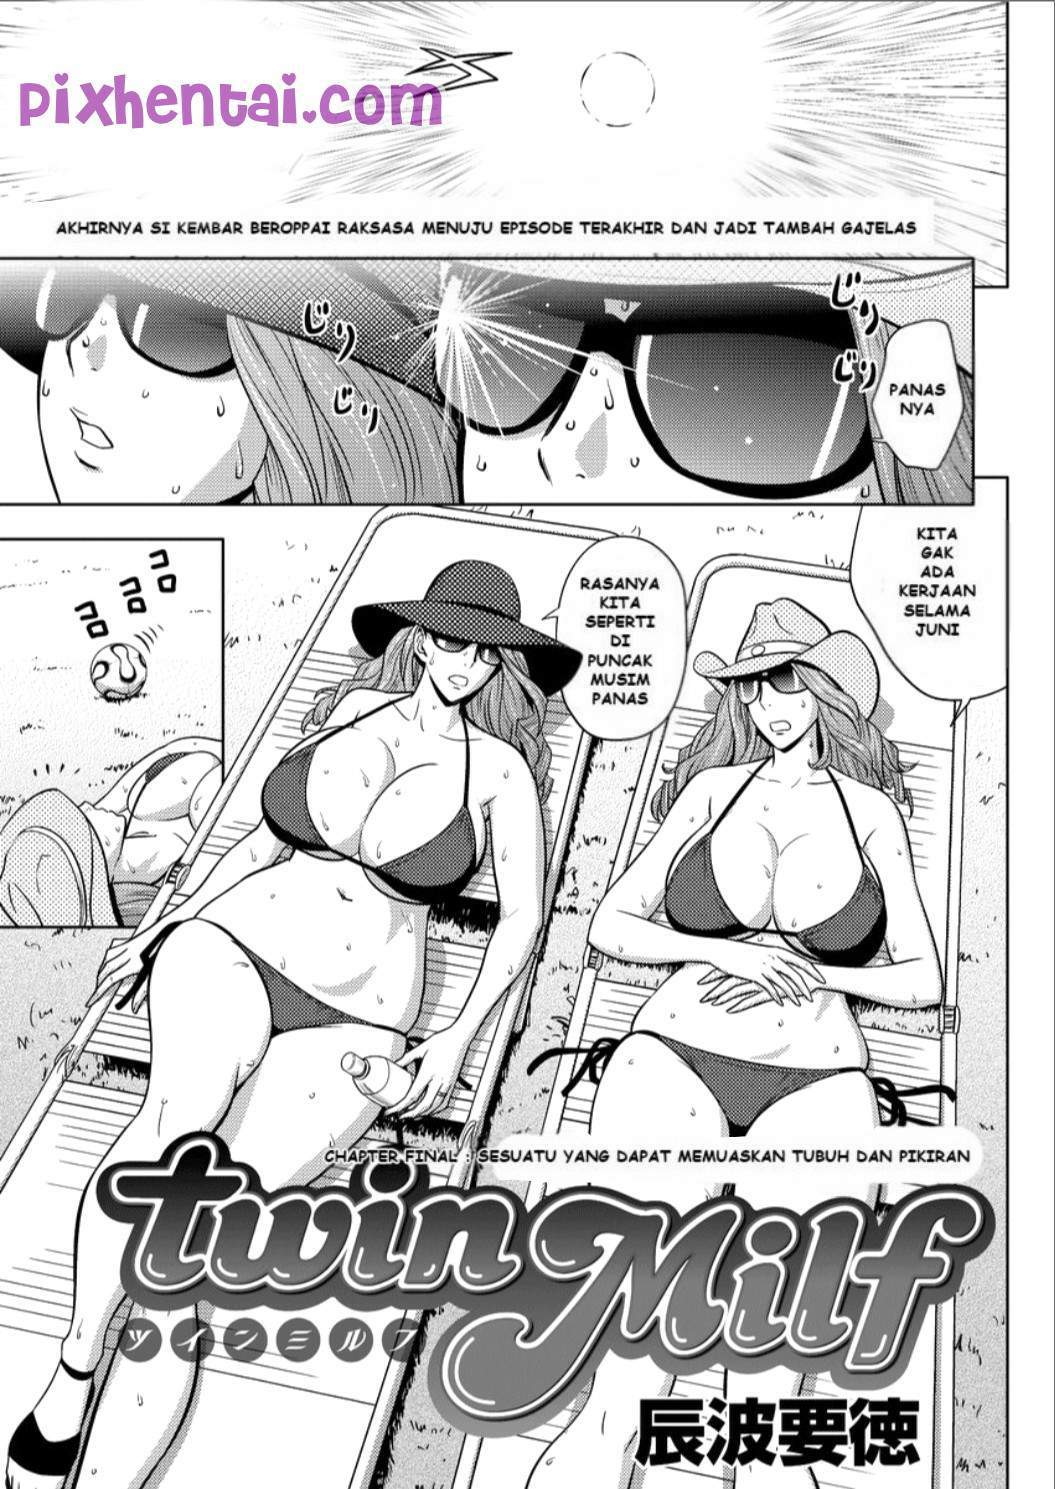 Komik hentai xxx manga sex bokep sesuatu yang dapat memuaskan tubuh dan pikiran 01